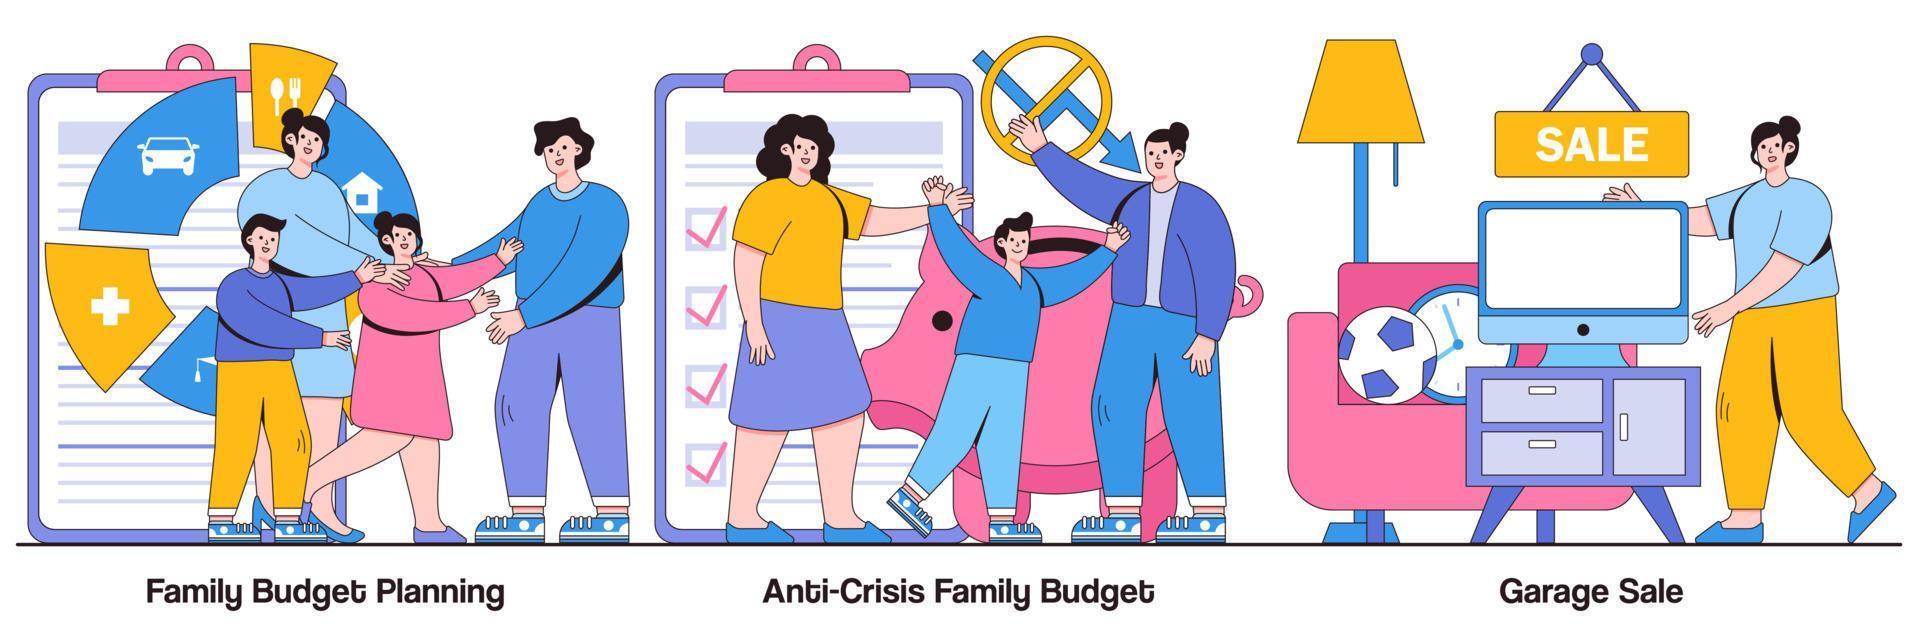 planificación del presupuesto familiar, presupuesto familiar anticrisis y paquete ilustrado de venta de garaje vector